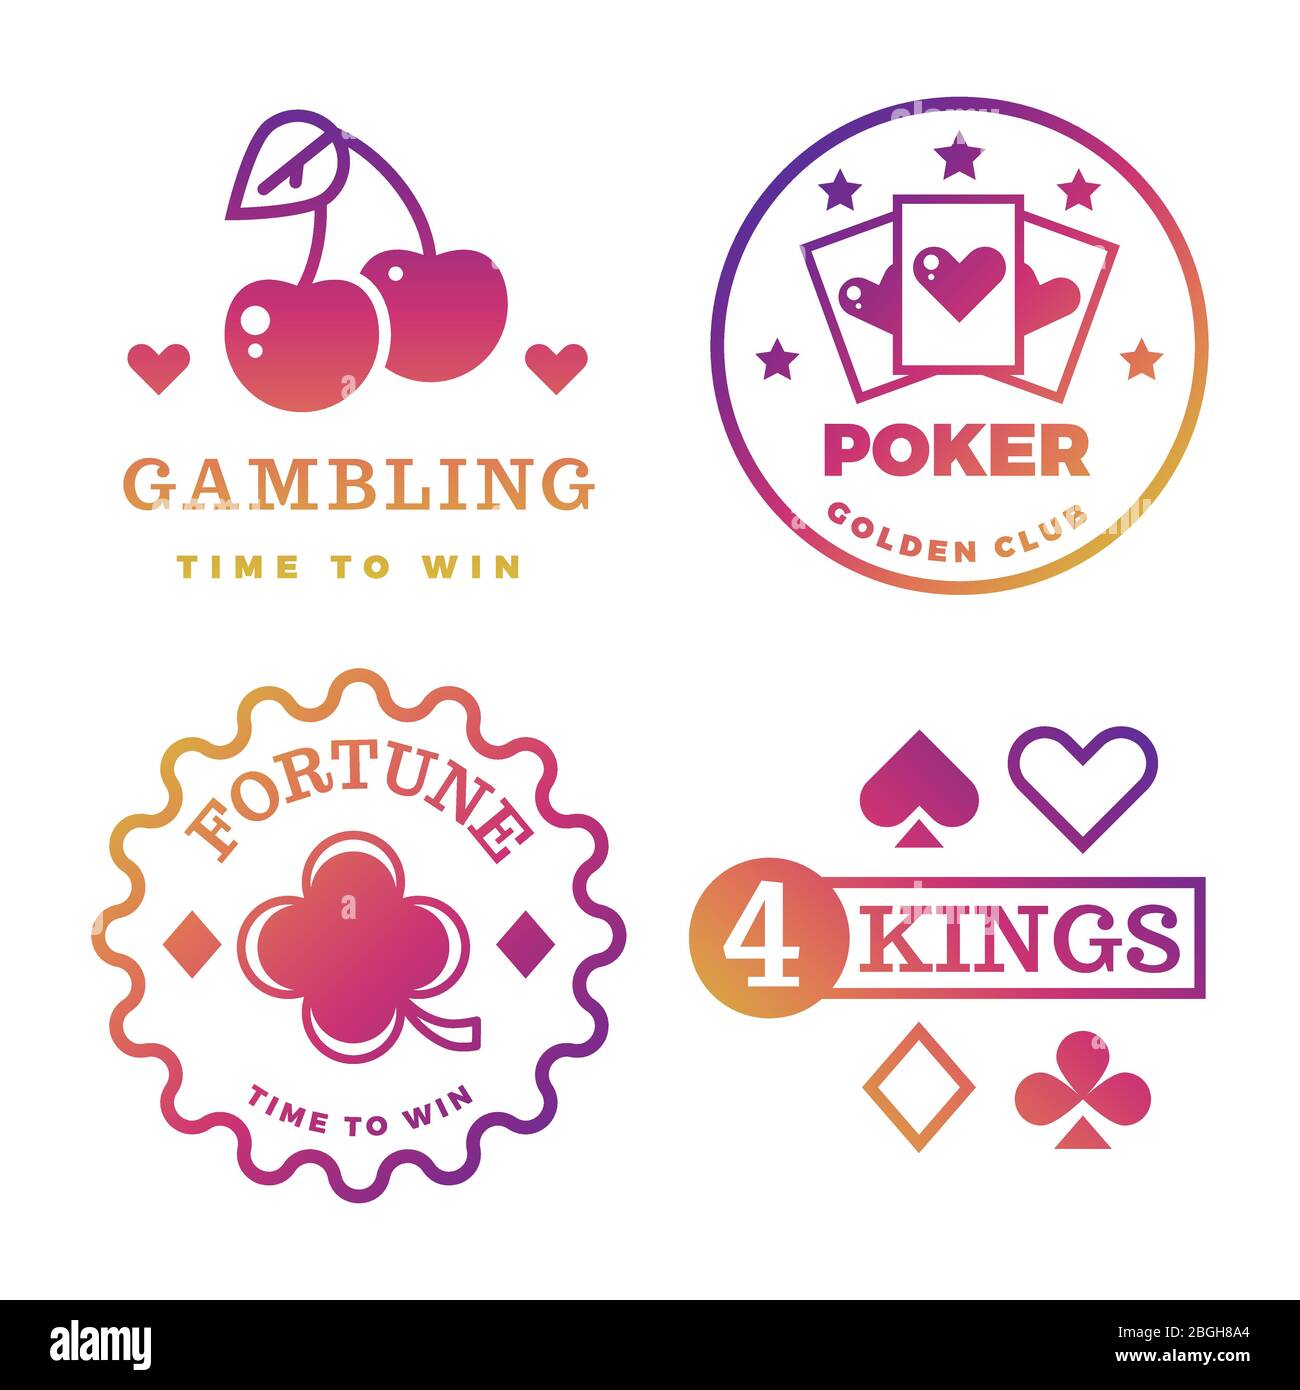 Helle Glücksspiel, Casino, Poker Royal Turnier, Roulette Vektor-Etiketten isoliert auf weißem Hintergrund Illustration Stock Vektor